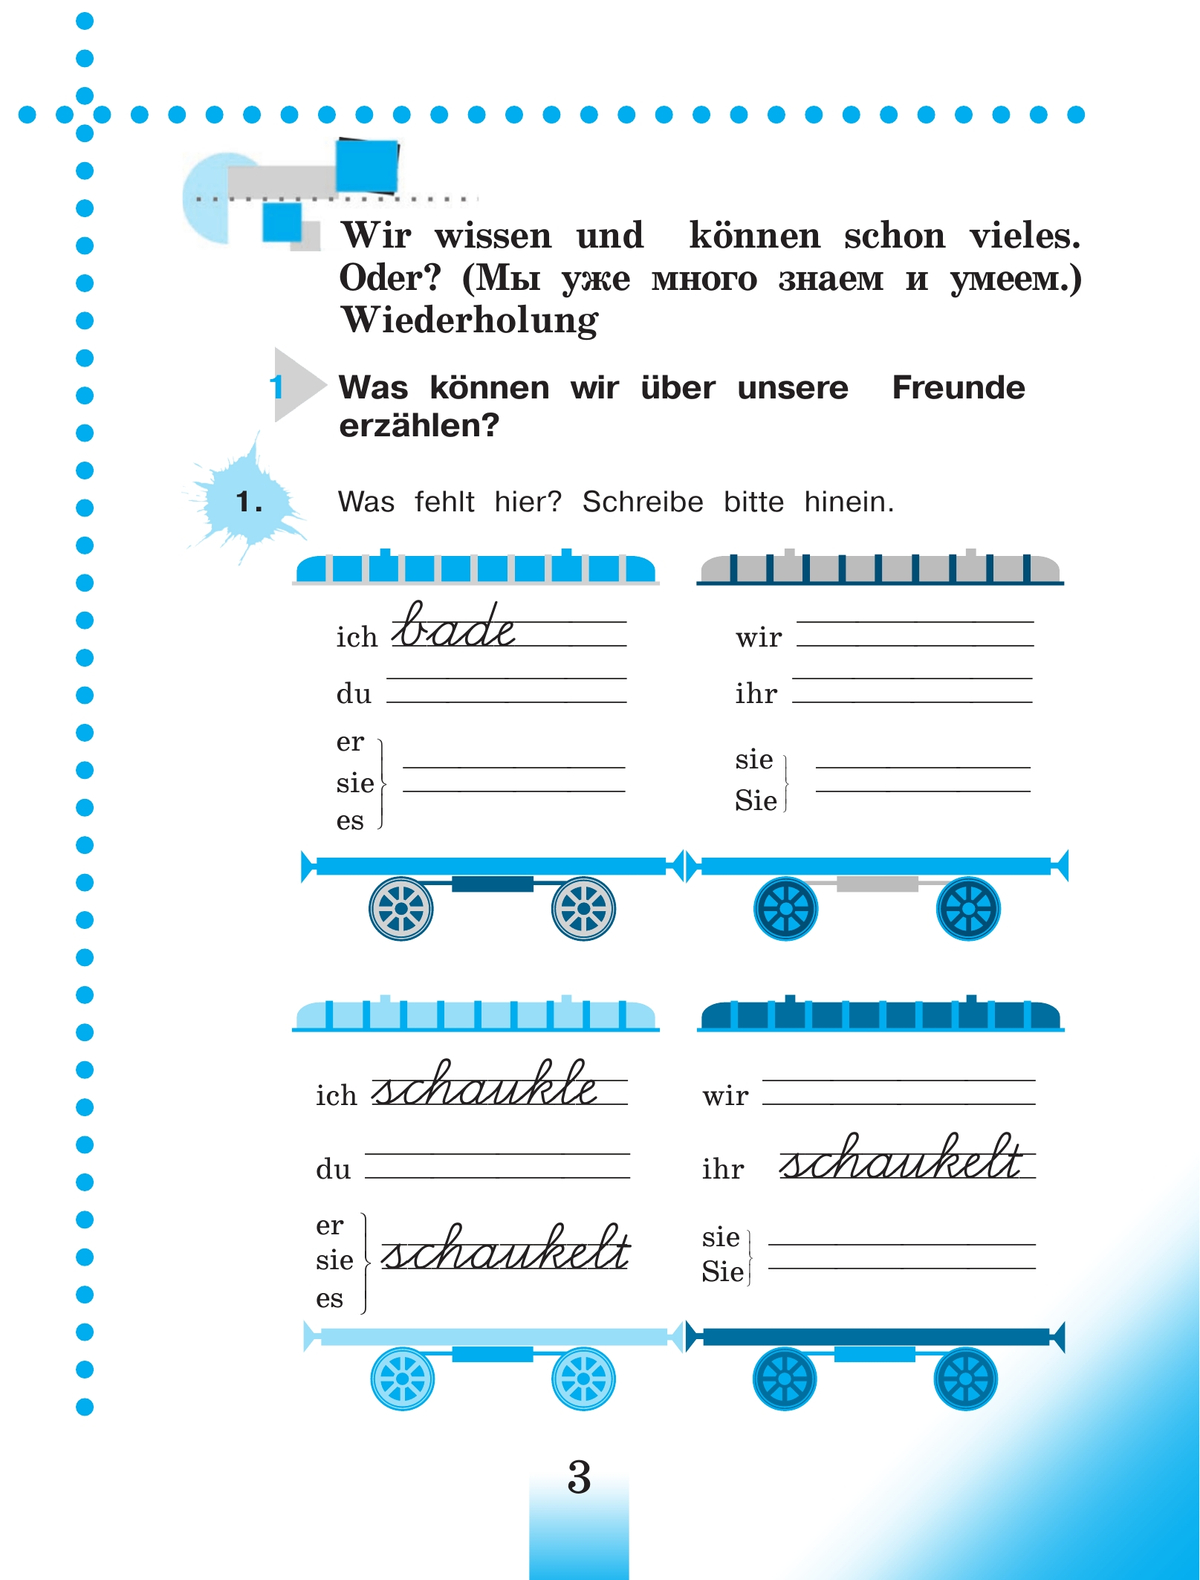 Немецкий язык. Рабочая тетрадь. 4 класс. В 2 ч. Часть А 8